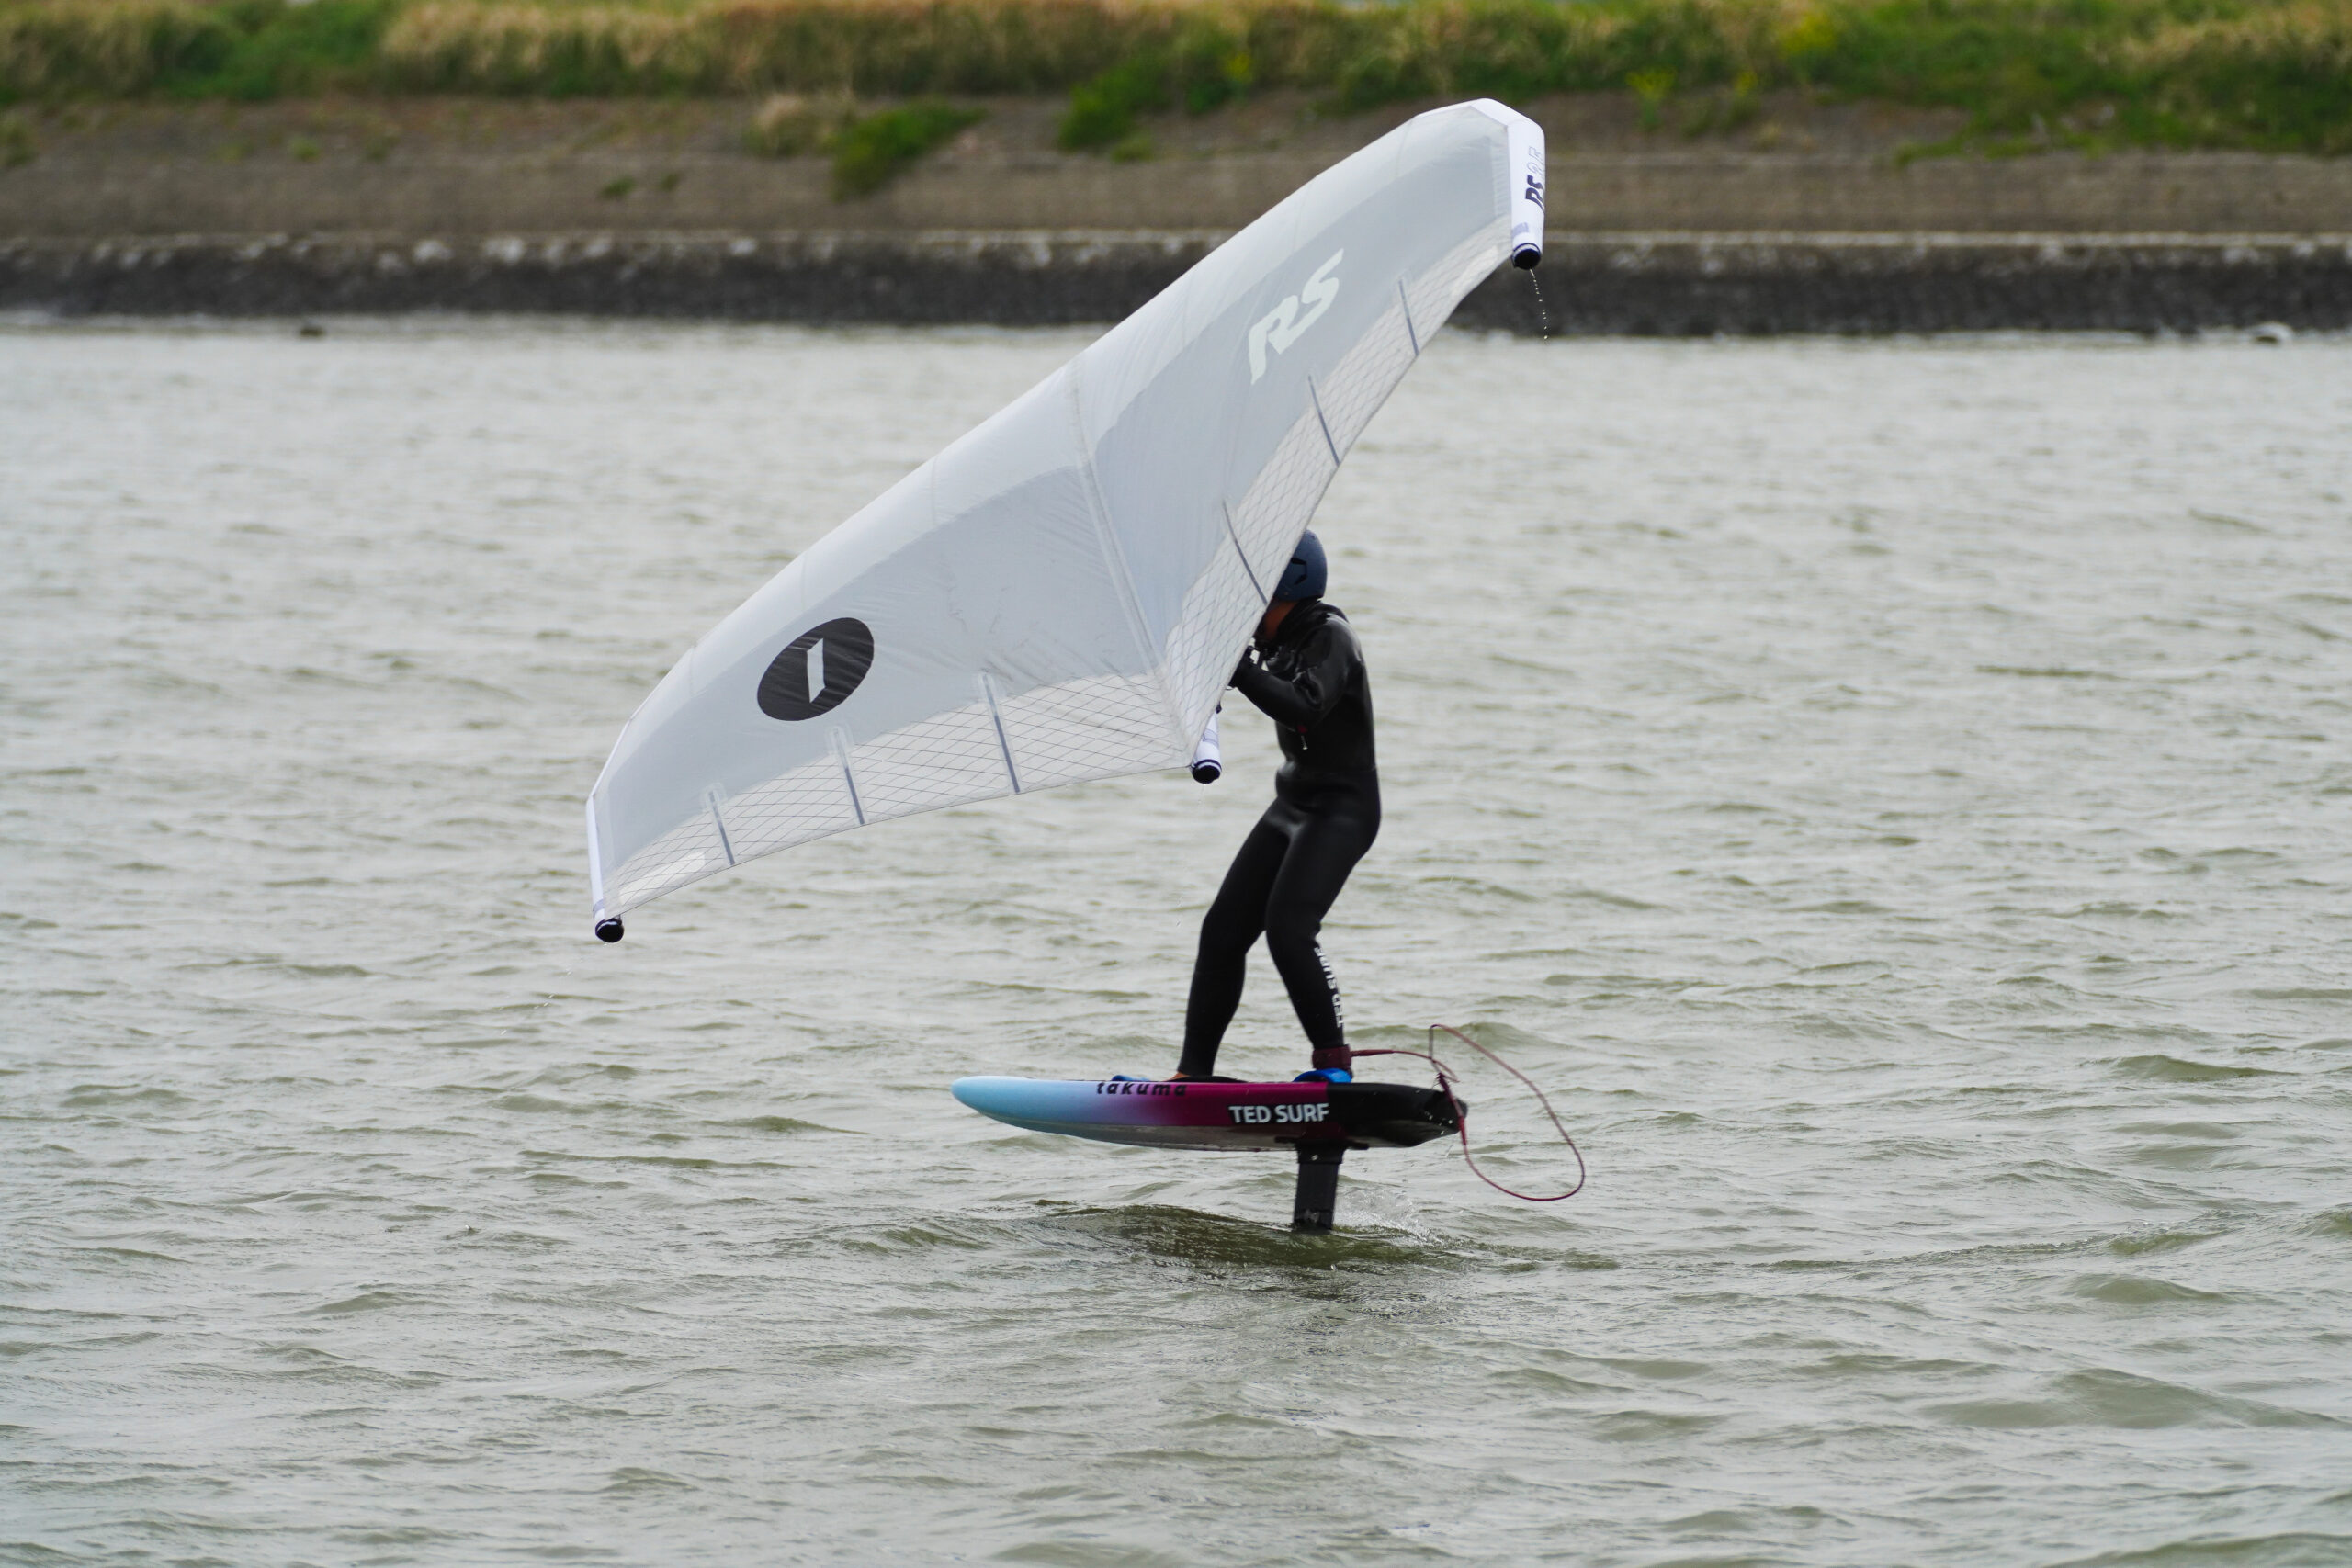 takuma RS wing / 放課後のウィングフォイルセッション - TED SURF